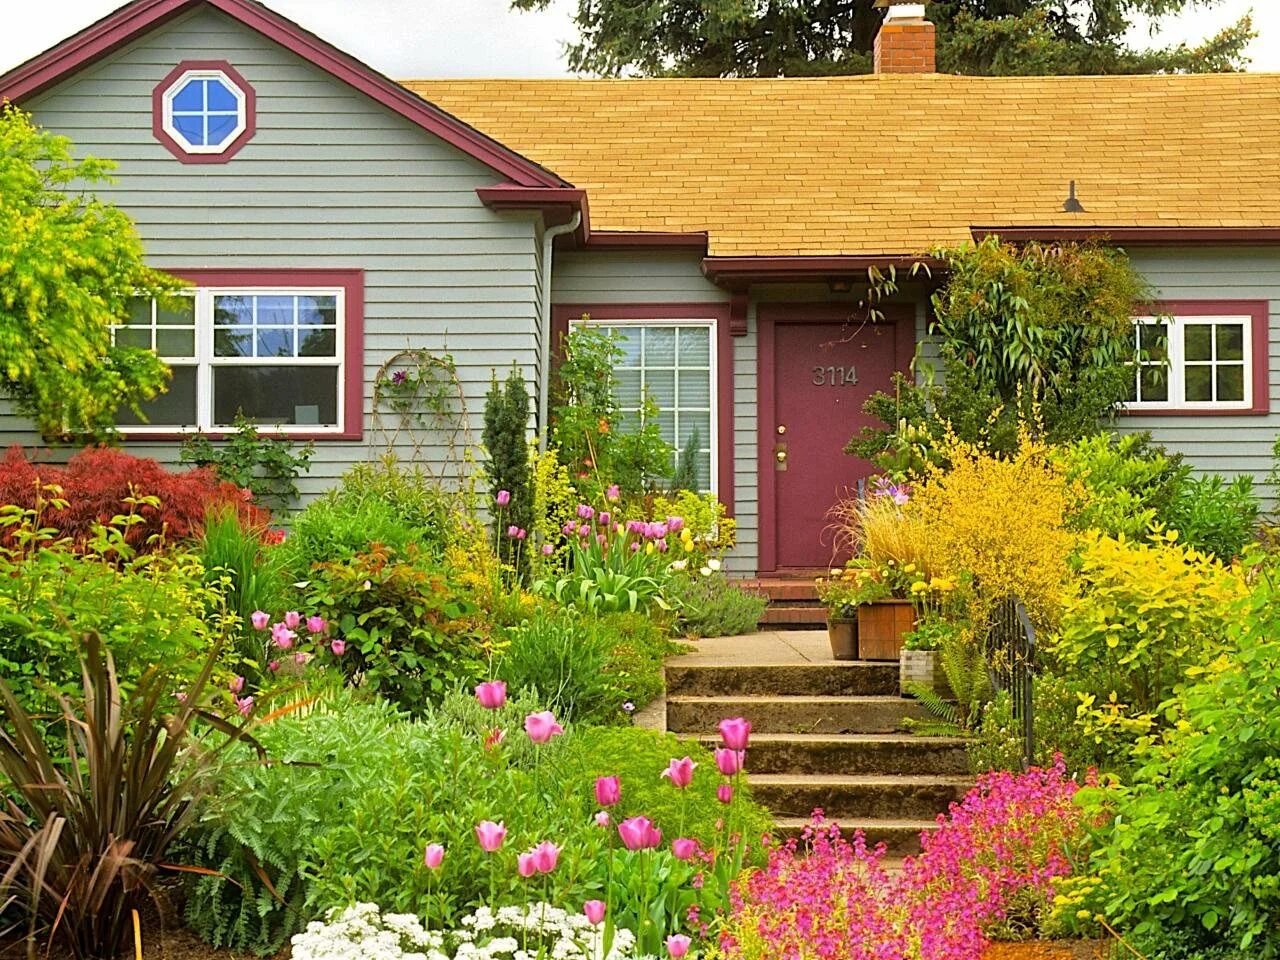 Палисадник Энфилд. Суздаль огороды палисадники. Красивая дача. Цветы в палисаднике перед домом.